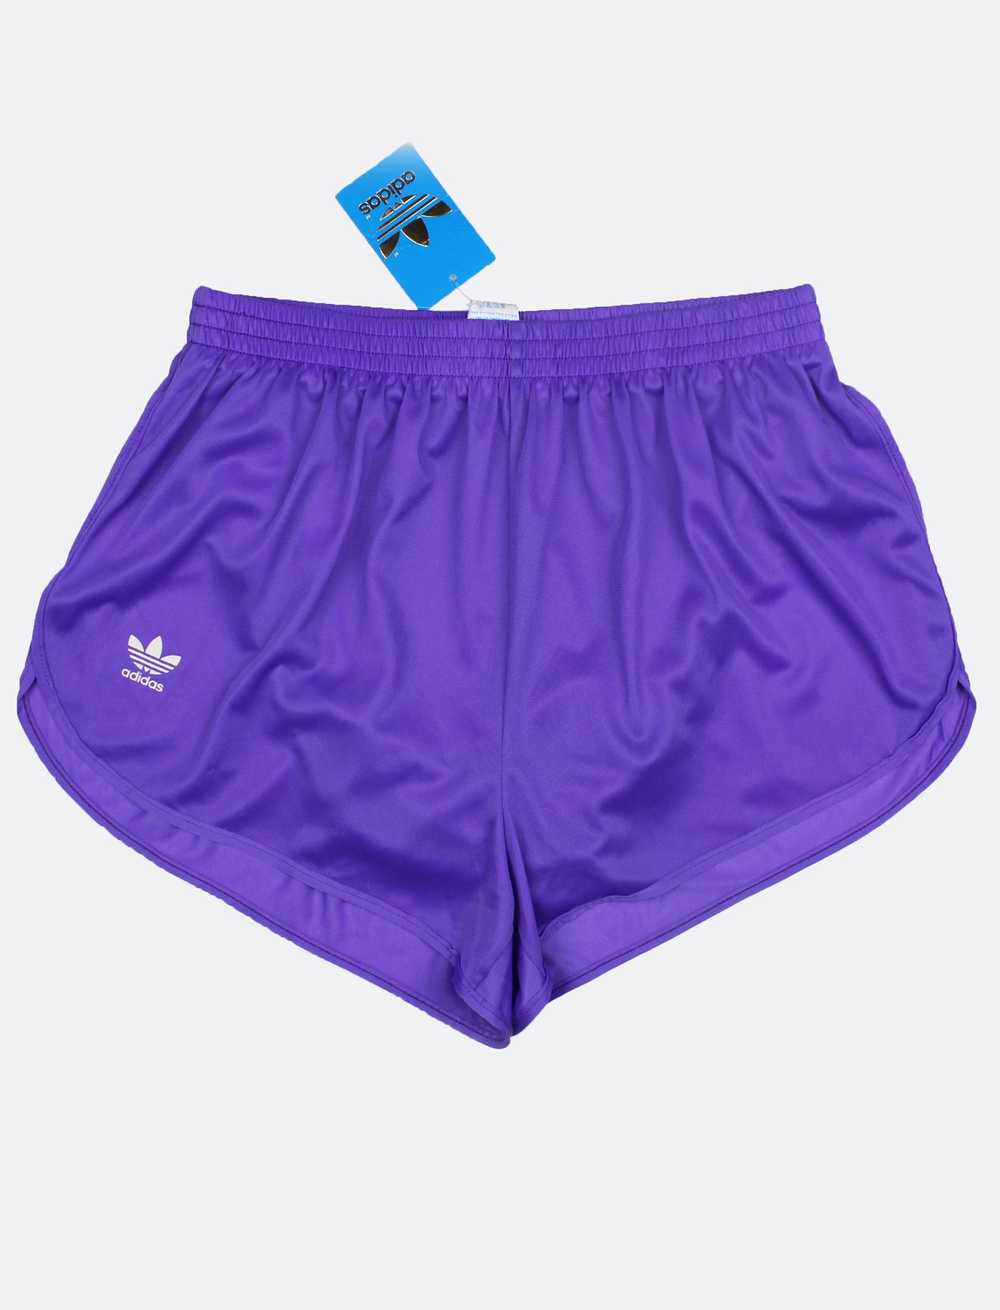 NOS 80s adidas Cosmos vintage shorts sprinter jogging… - Gem